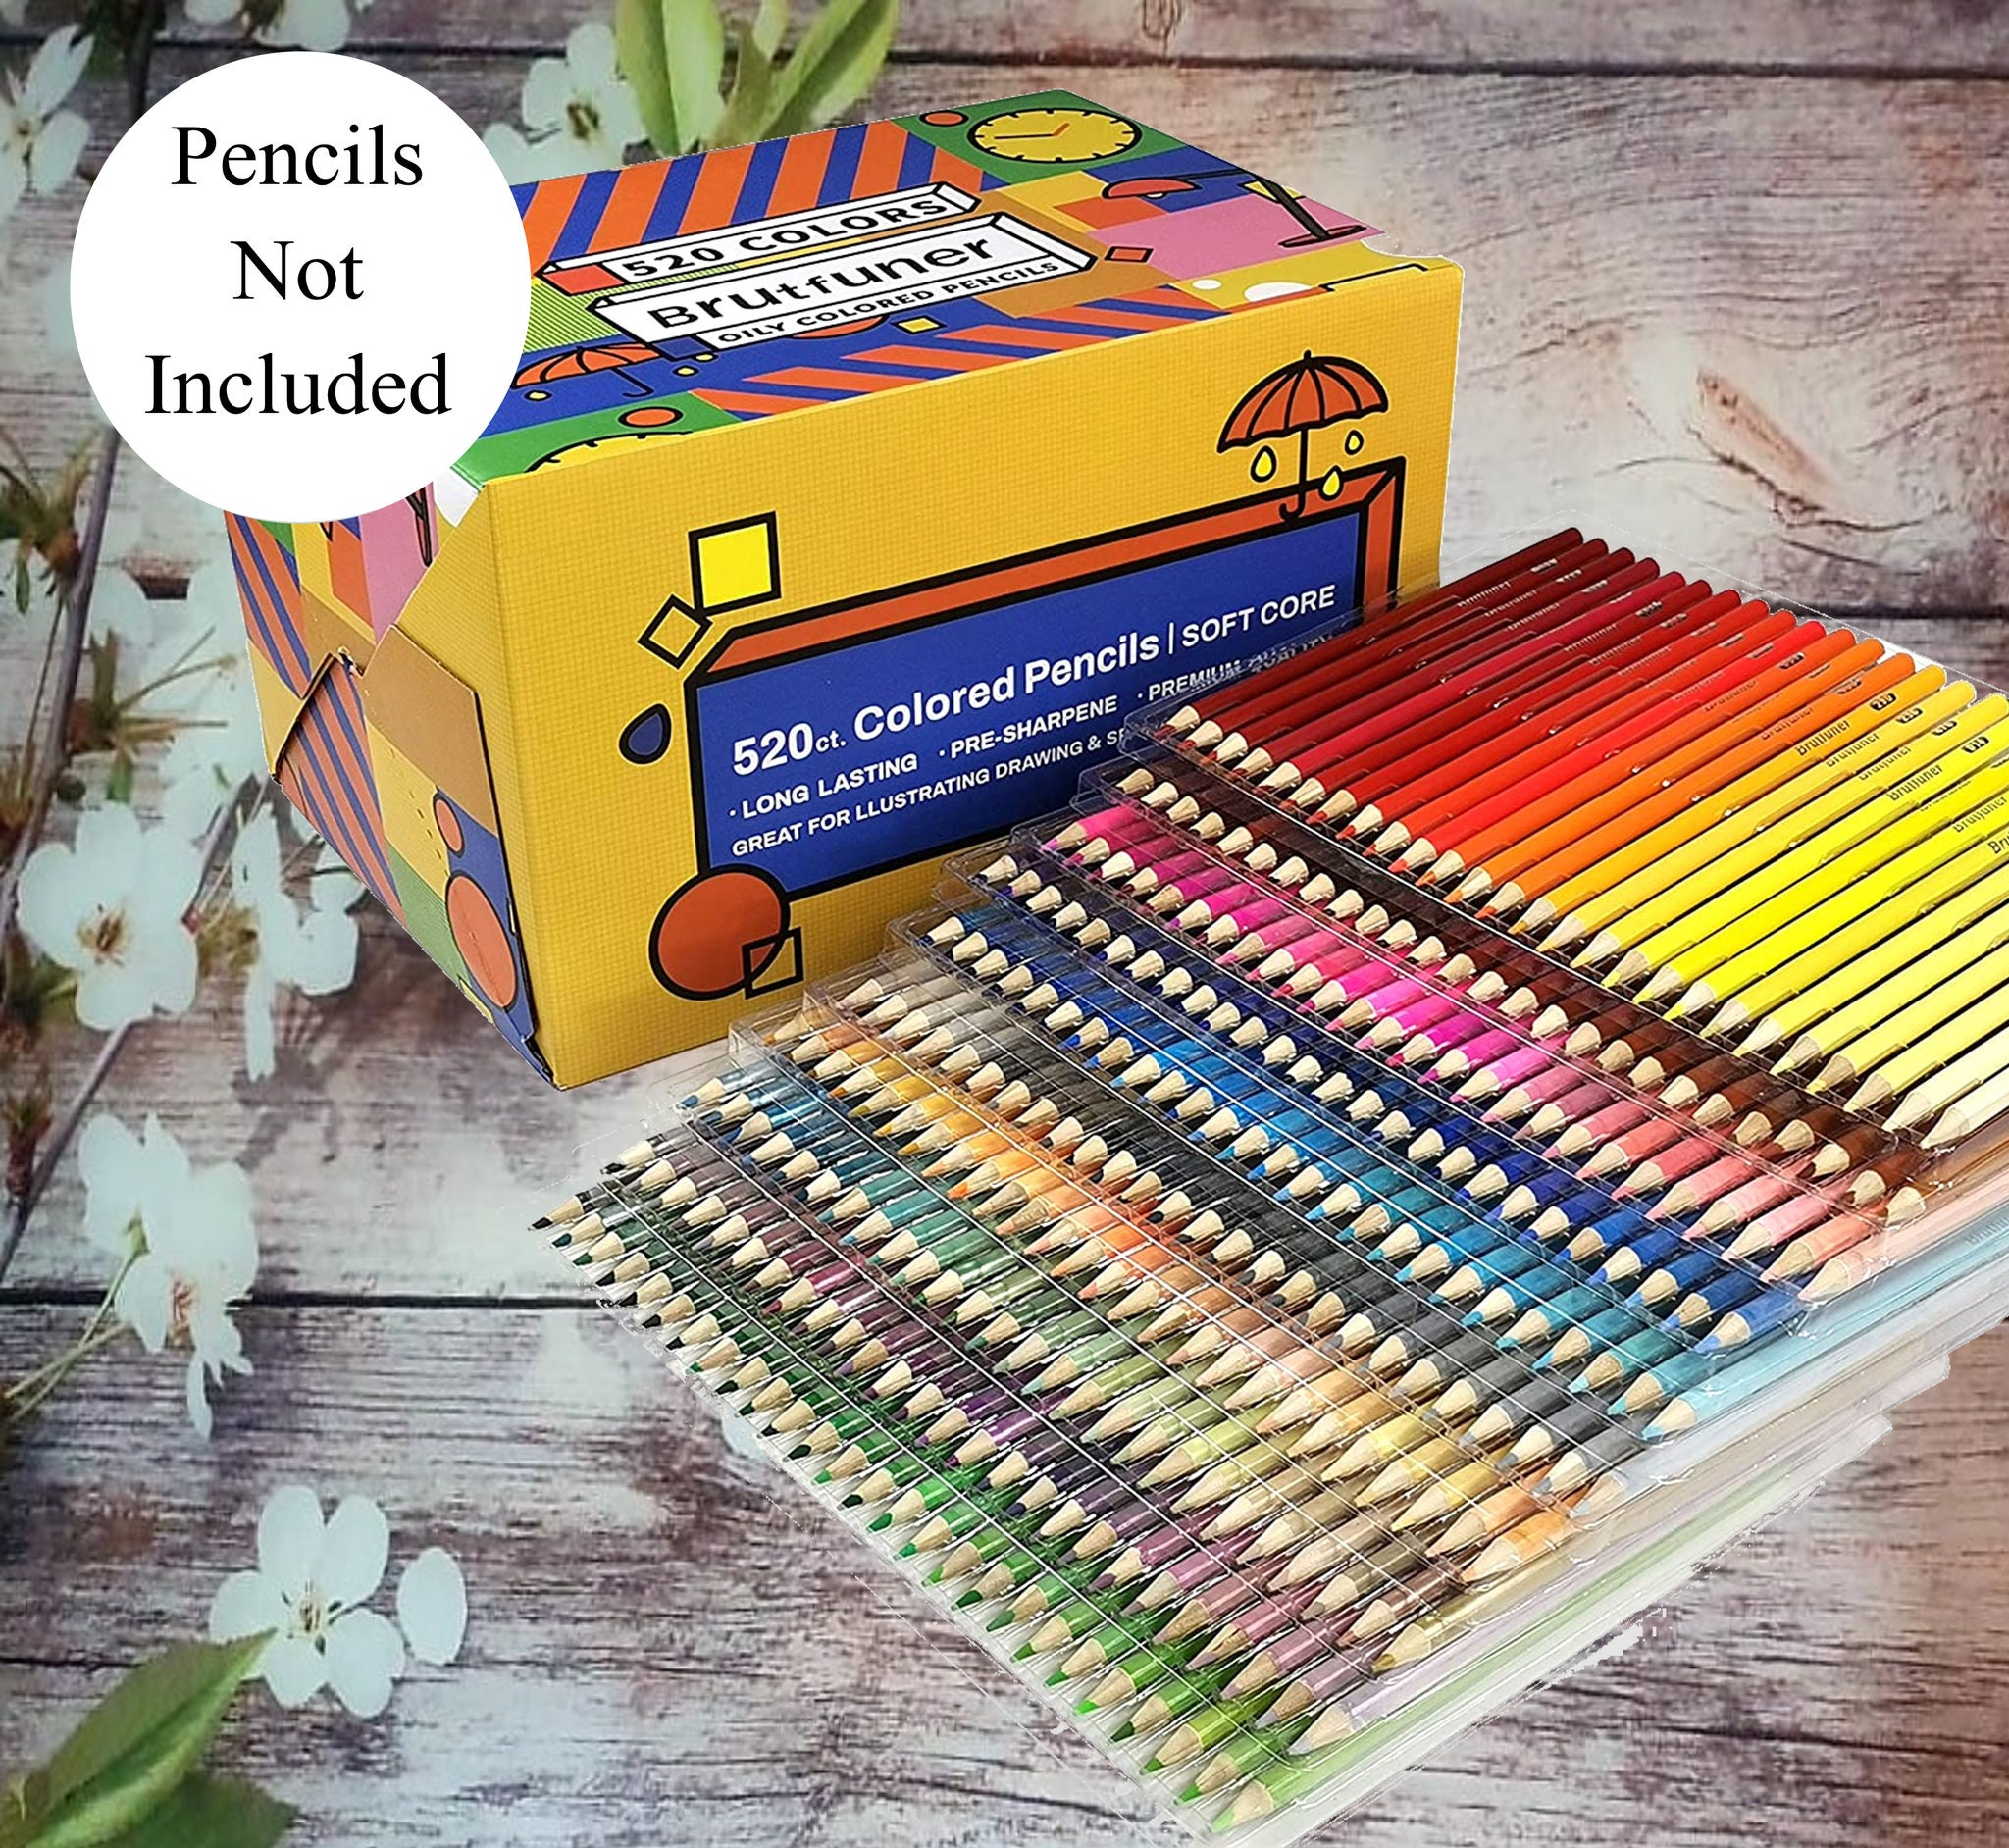 Crayon de couleur,Brutfuner ensemble de crayons de couleur